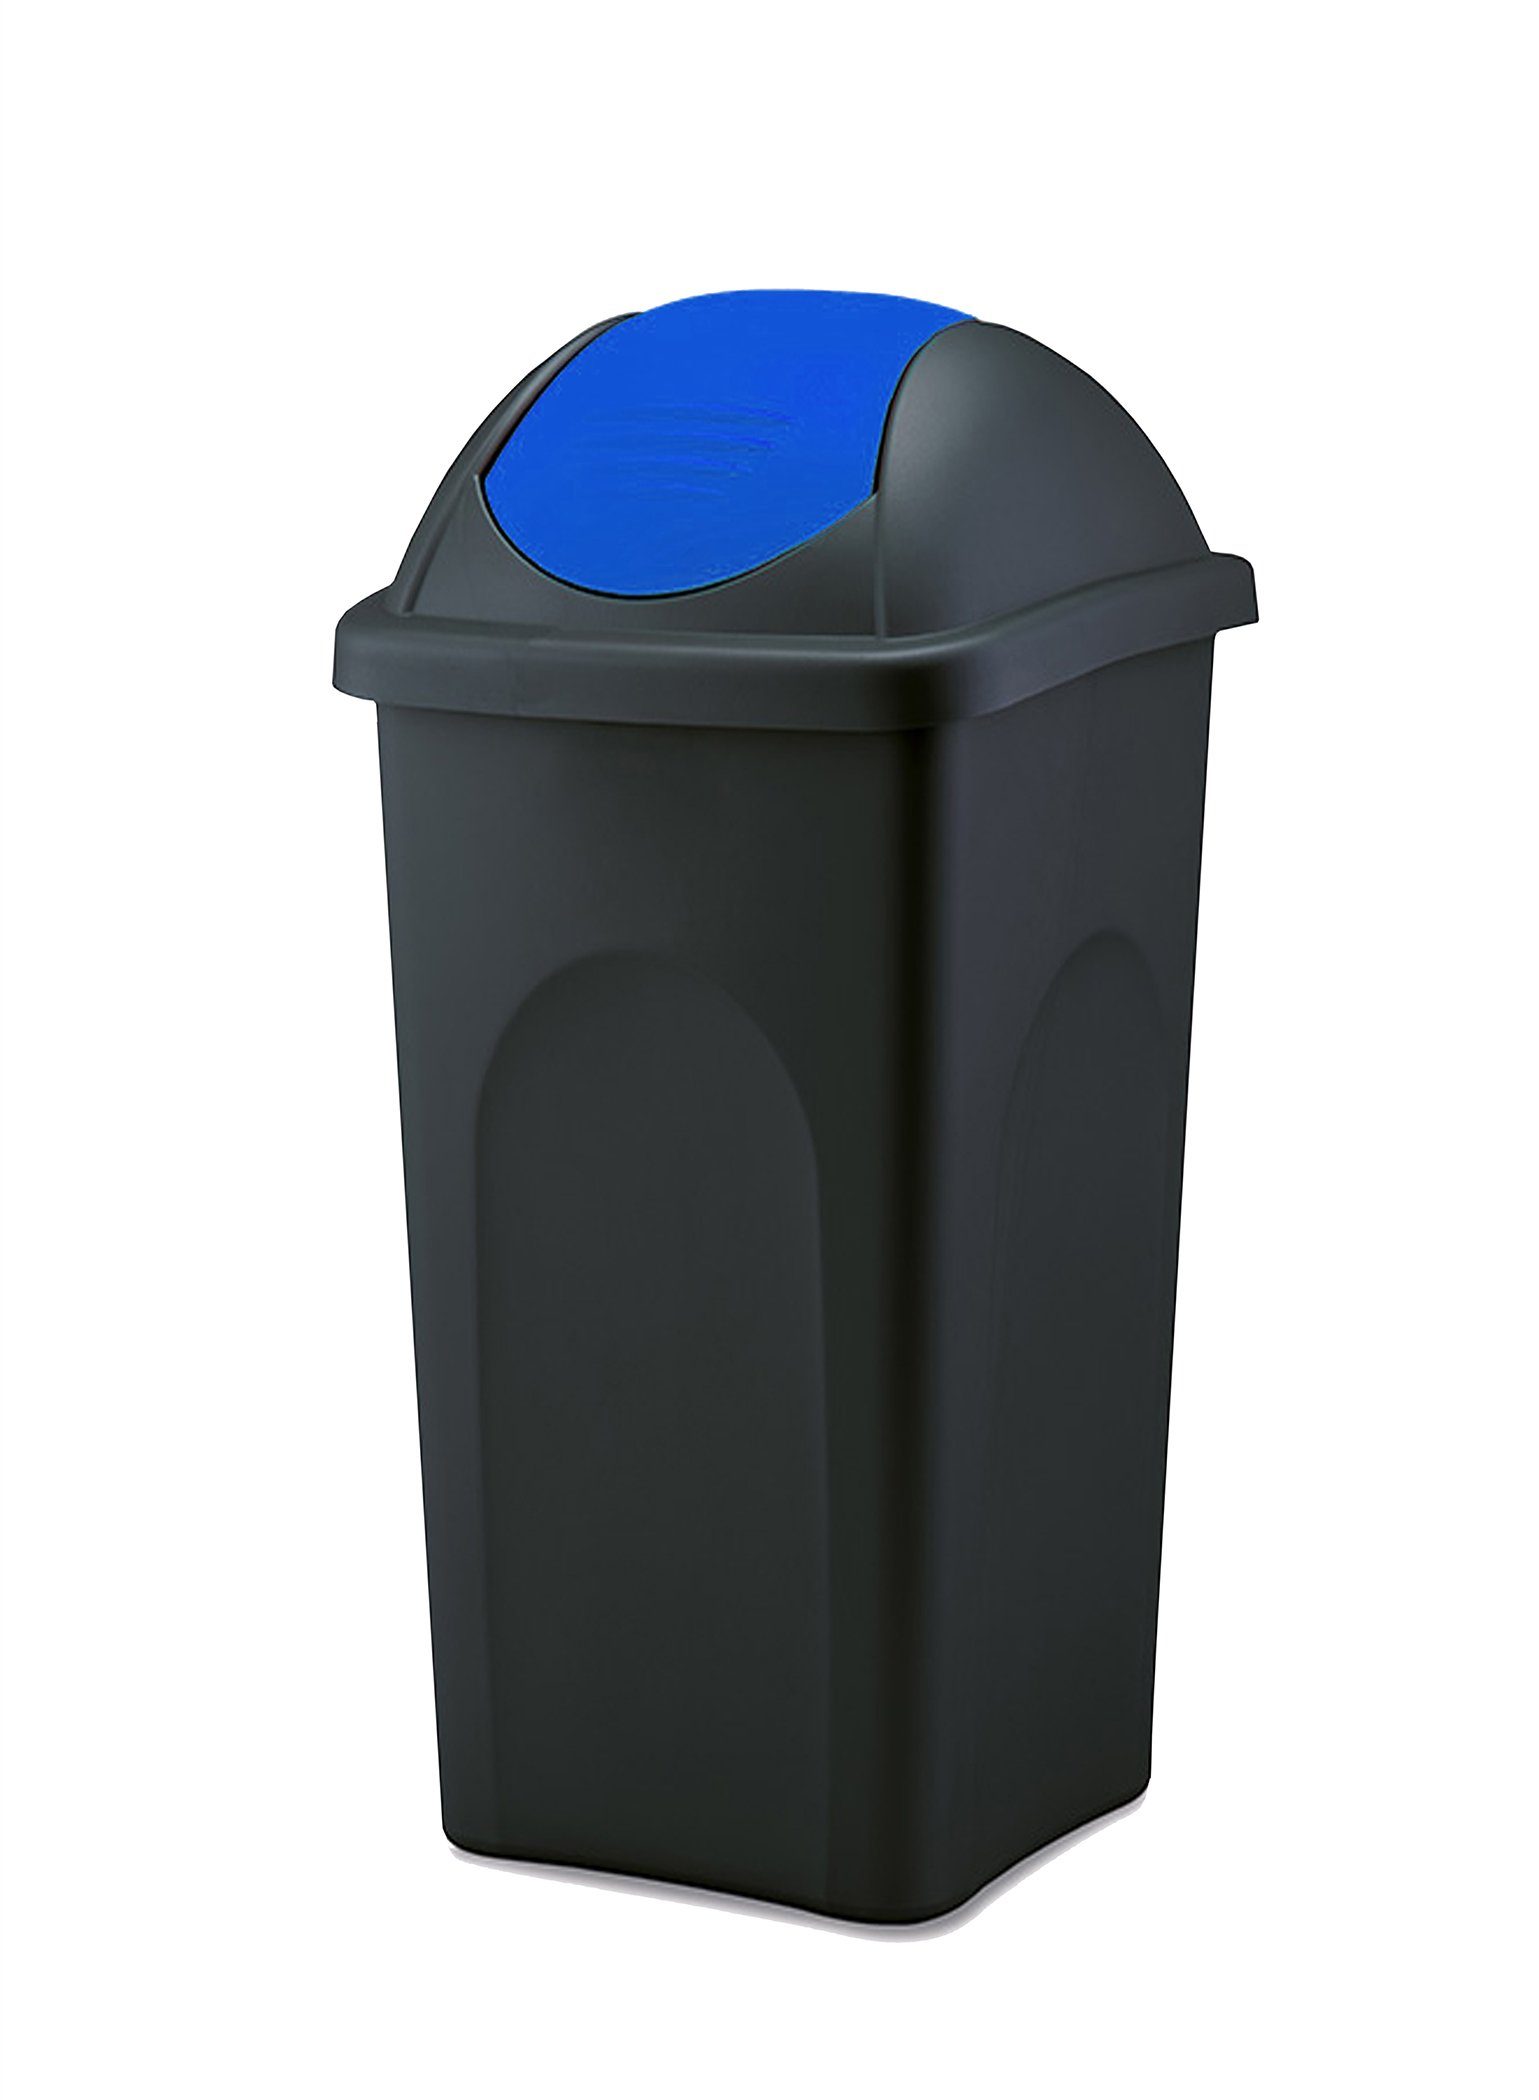 30 groß schwarz L Schwingdeckel BigDean Mülleimer Müllsammler Blau Abfalleimer